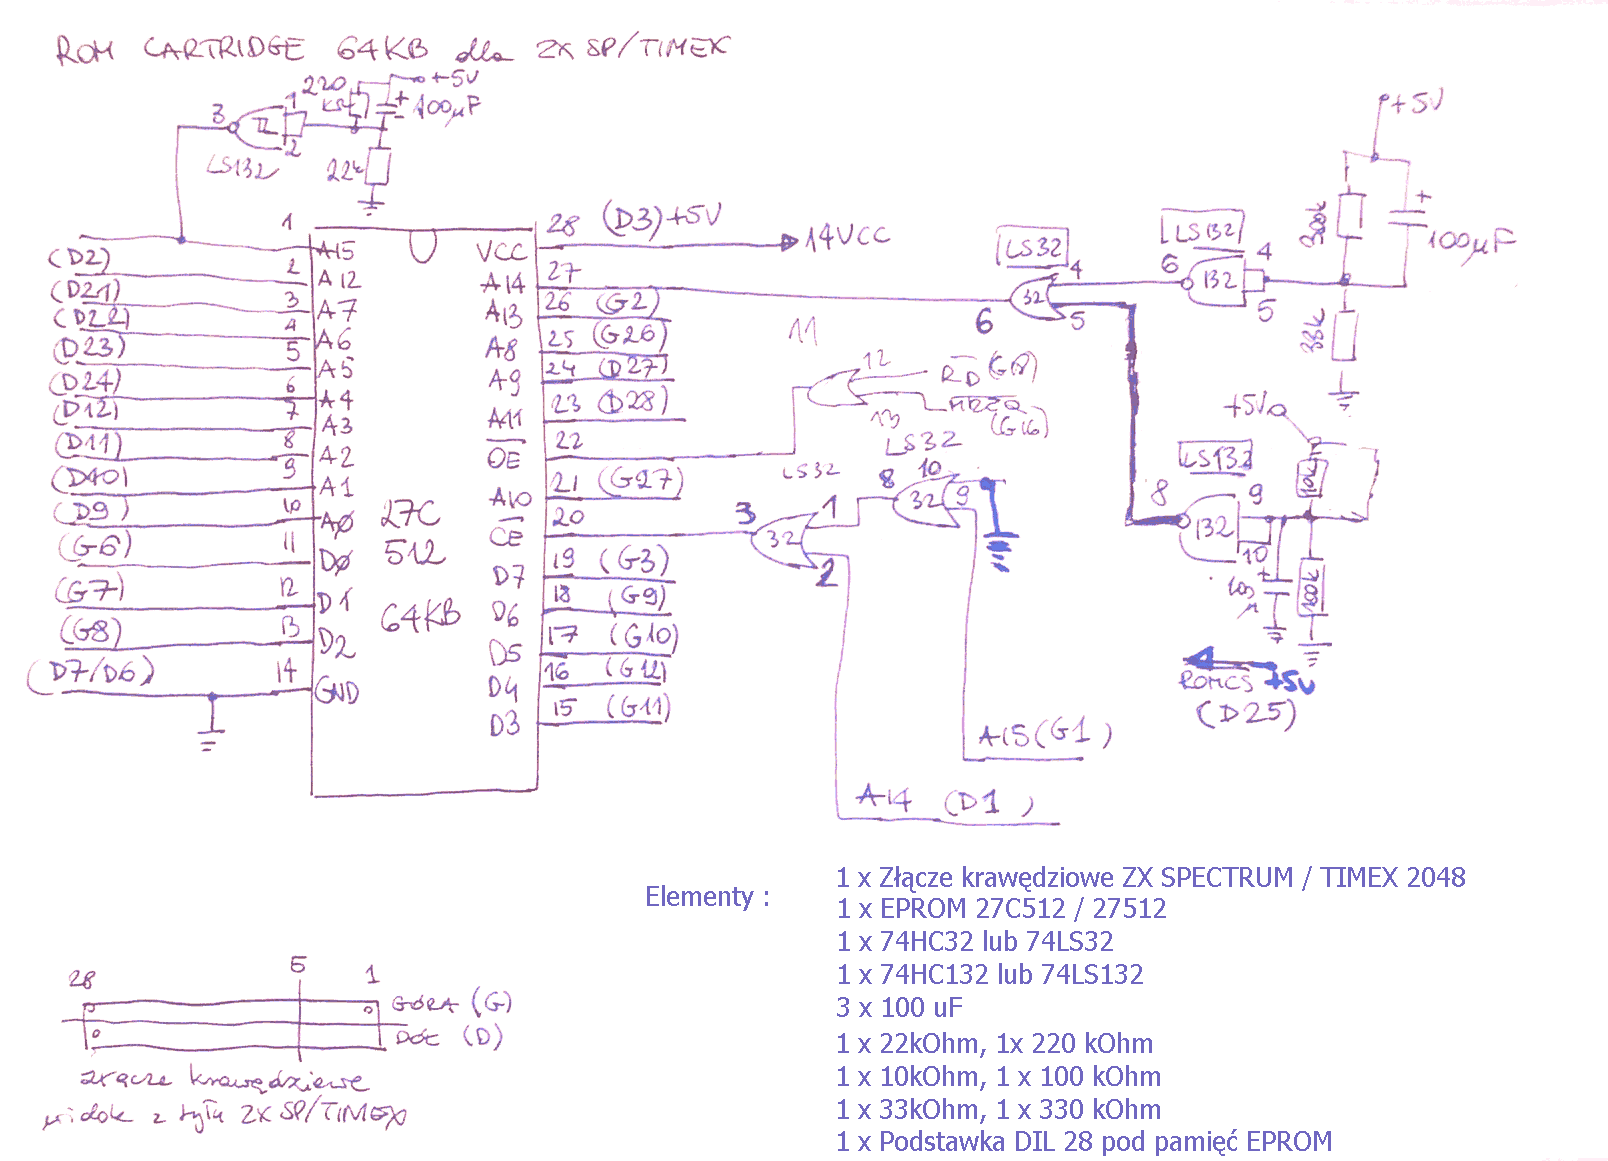 eprom schematics under Repository-circuits -40740- : Next.gr